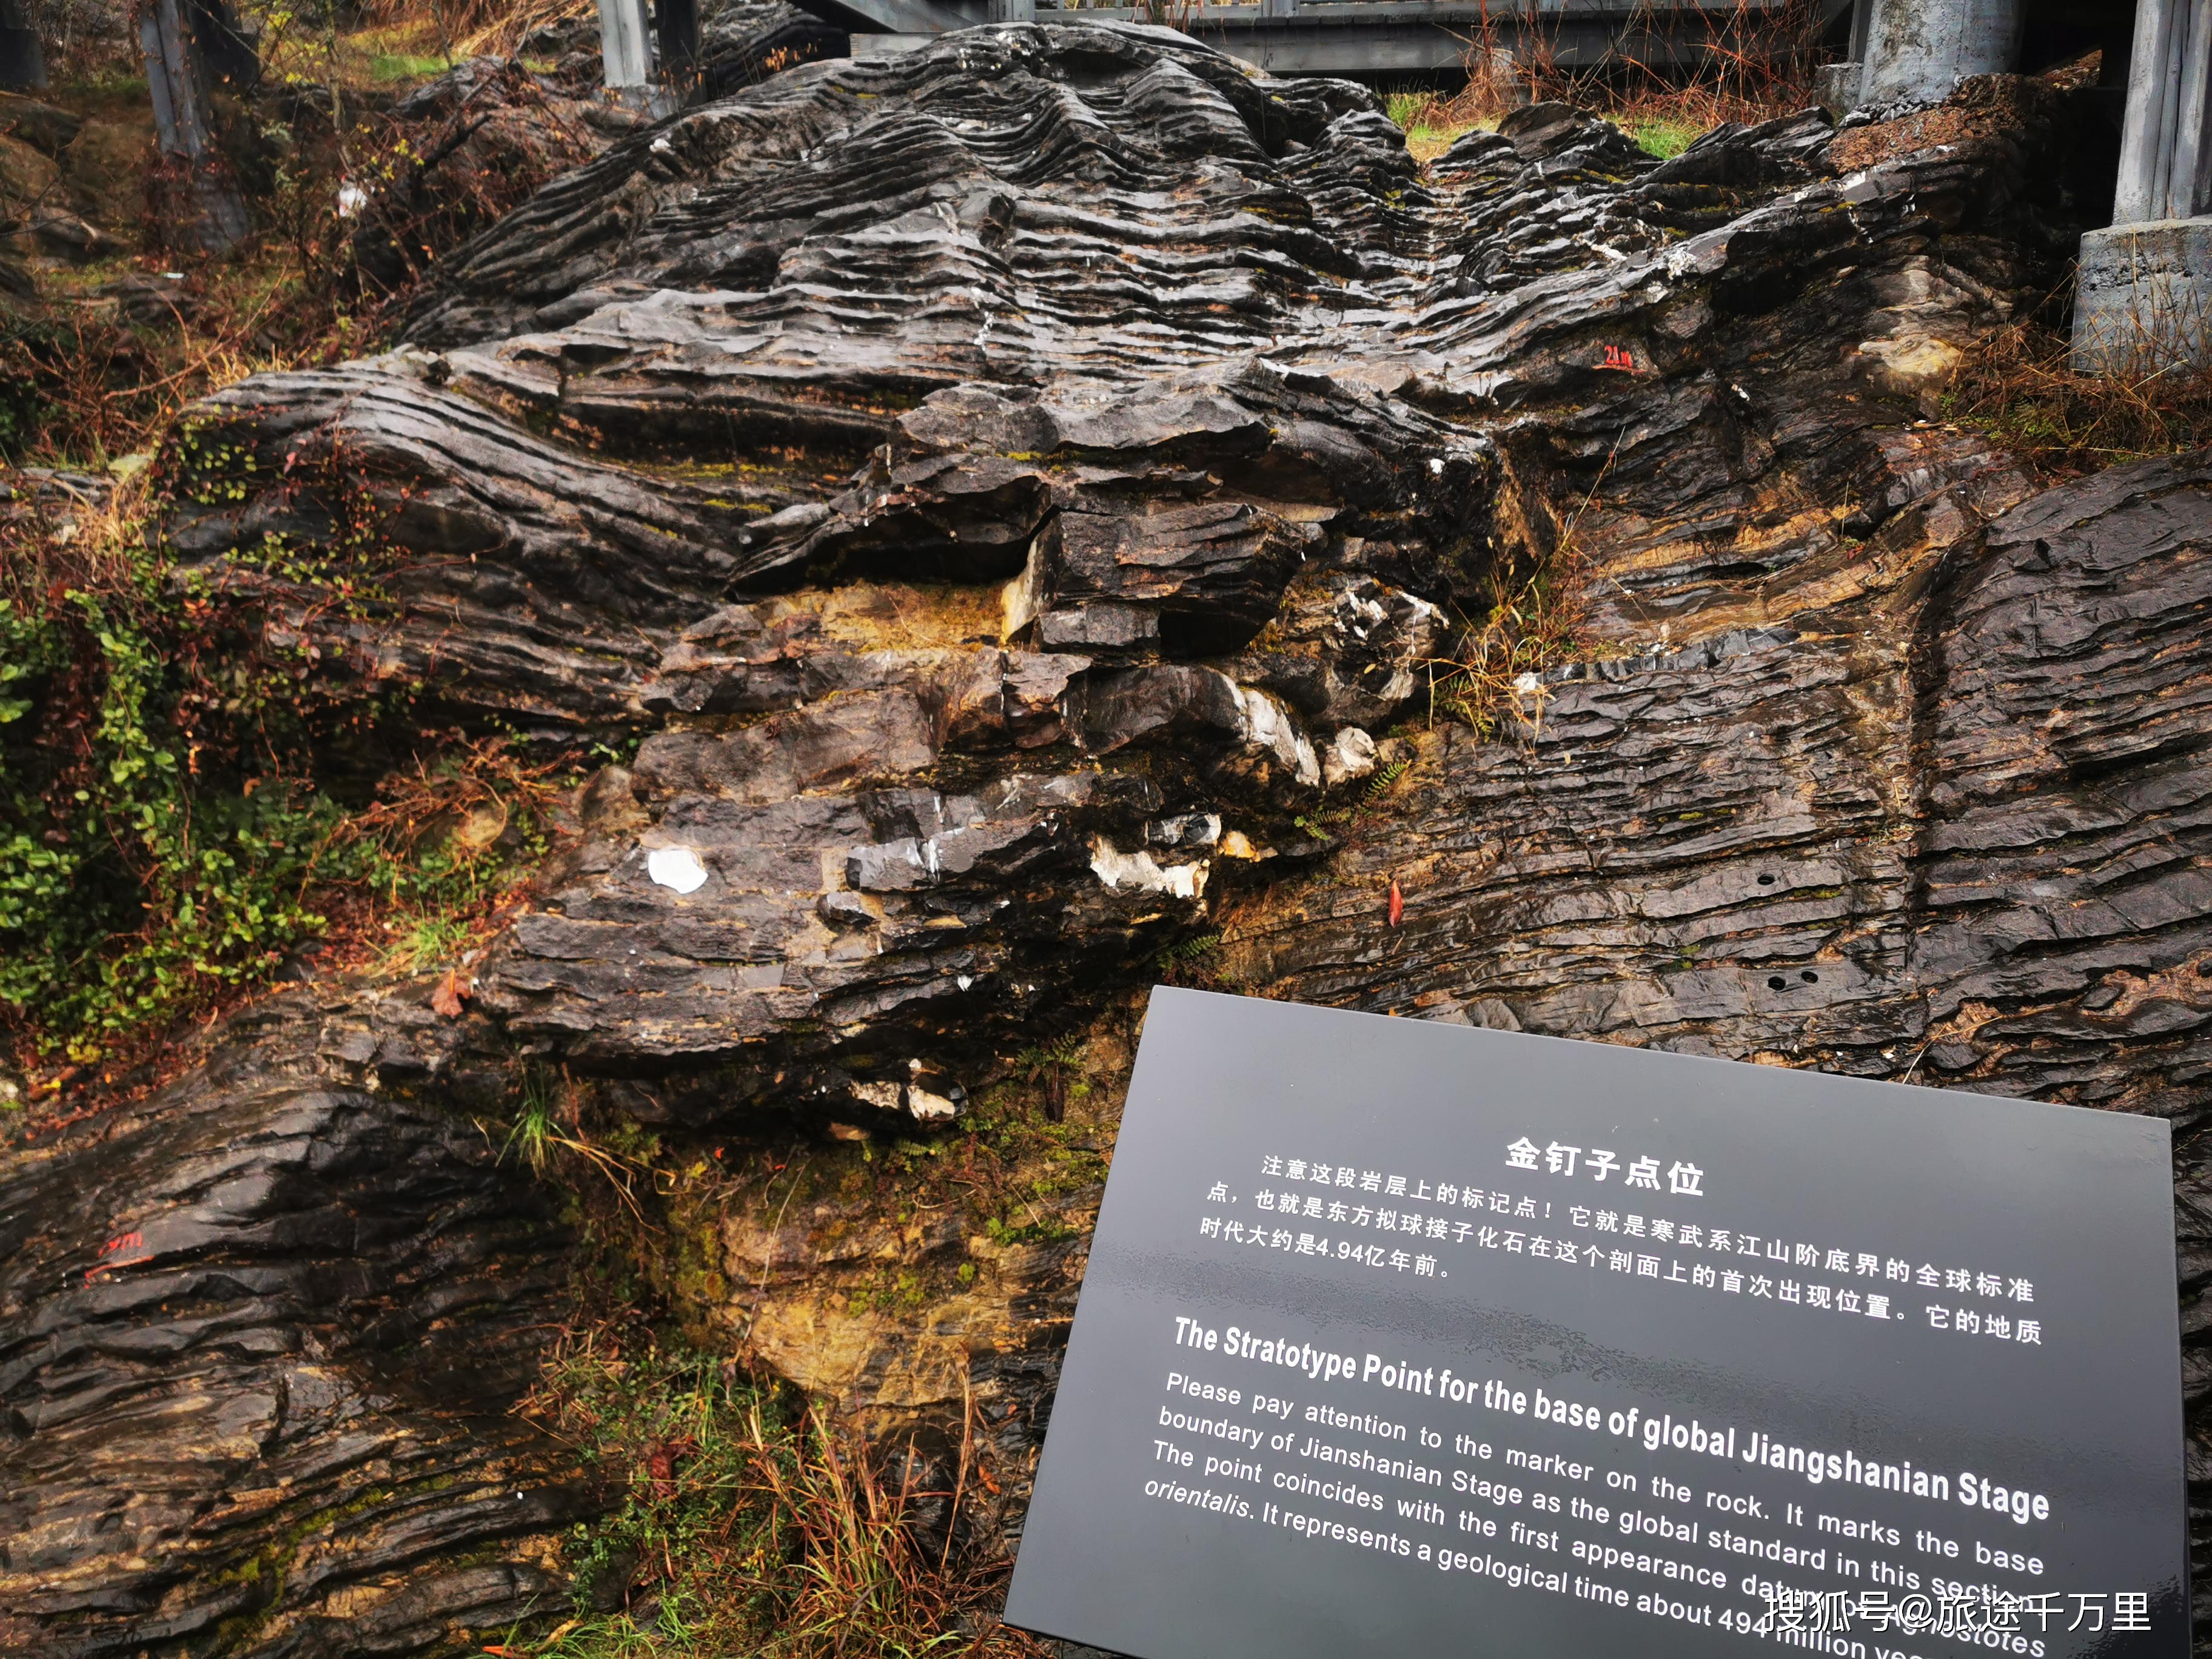 浙江衢州金山阶金钉子自然保护区寒武纪岩石展示生物进化史